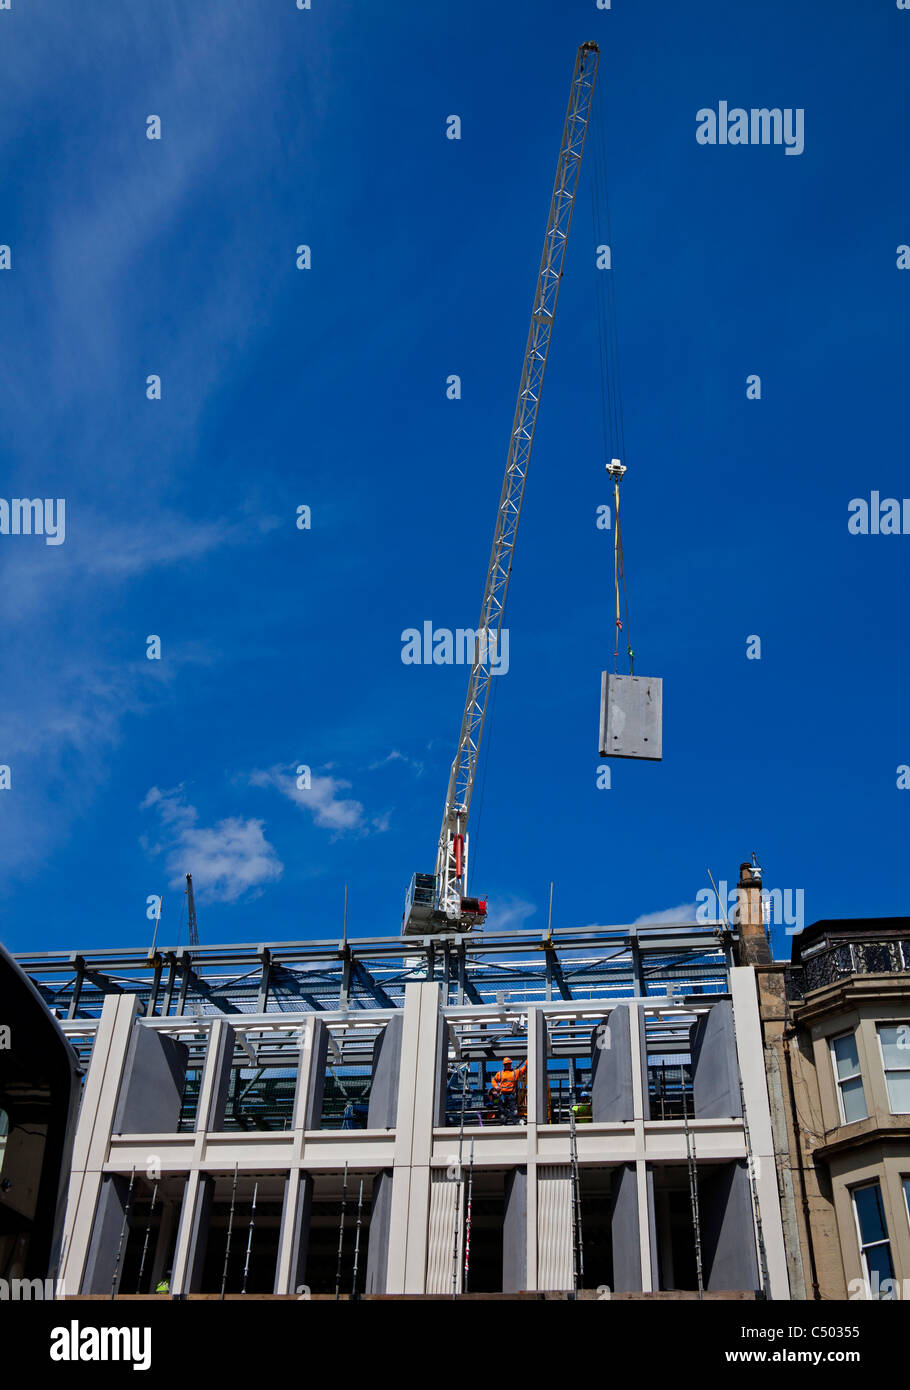 Édimbourg, la construction des ascenseurs grues de bord en pierre Banque D'Images